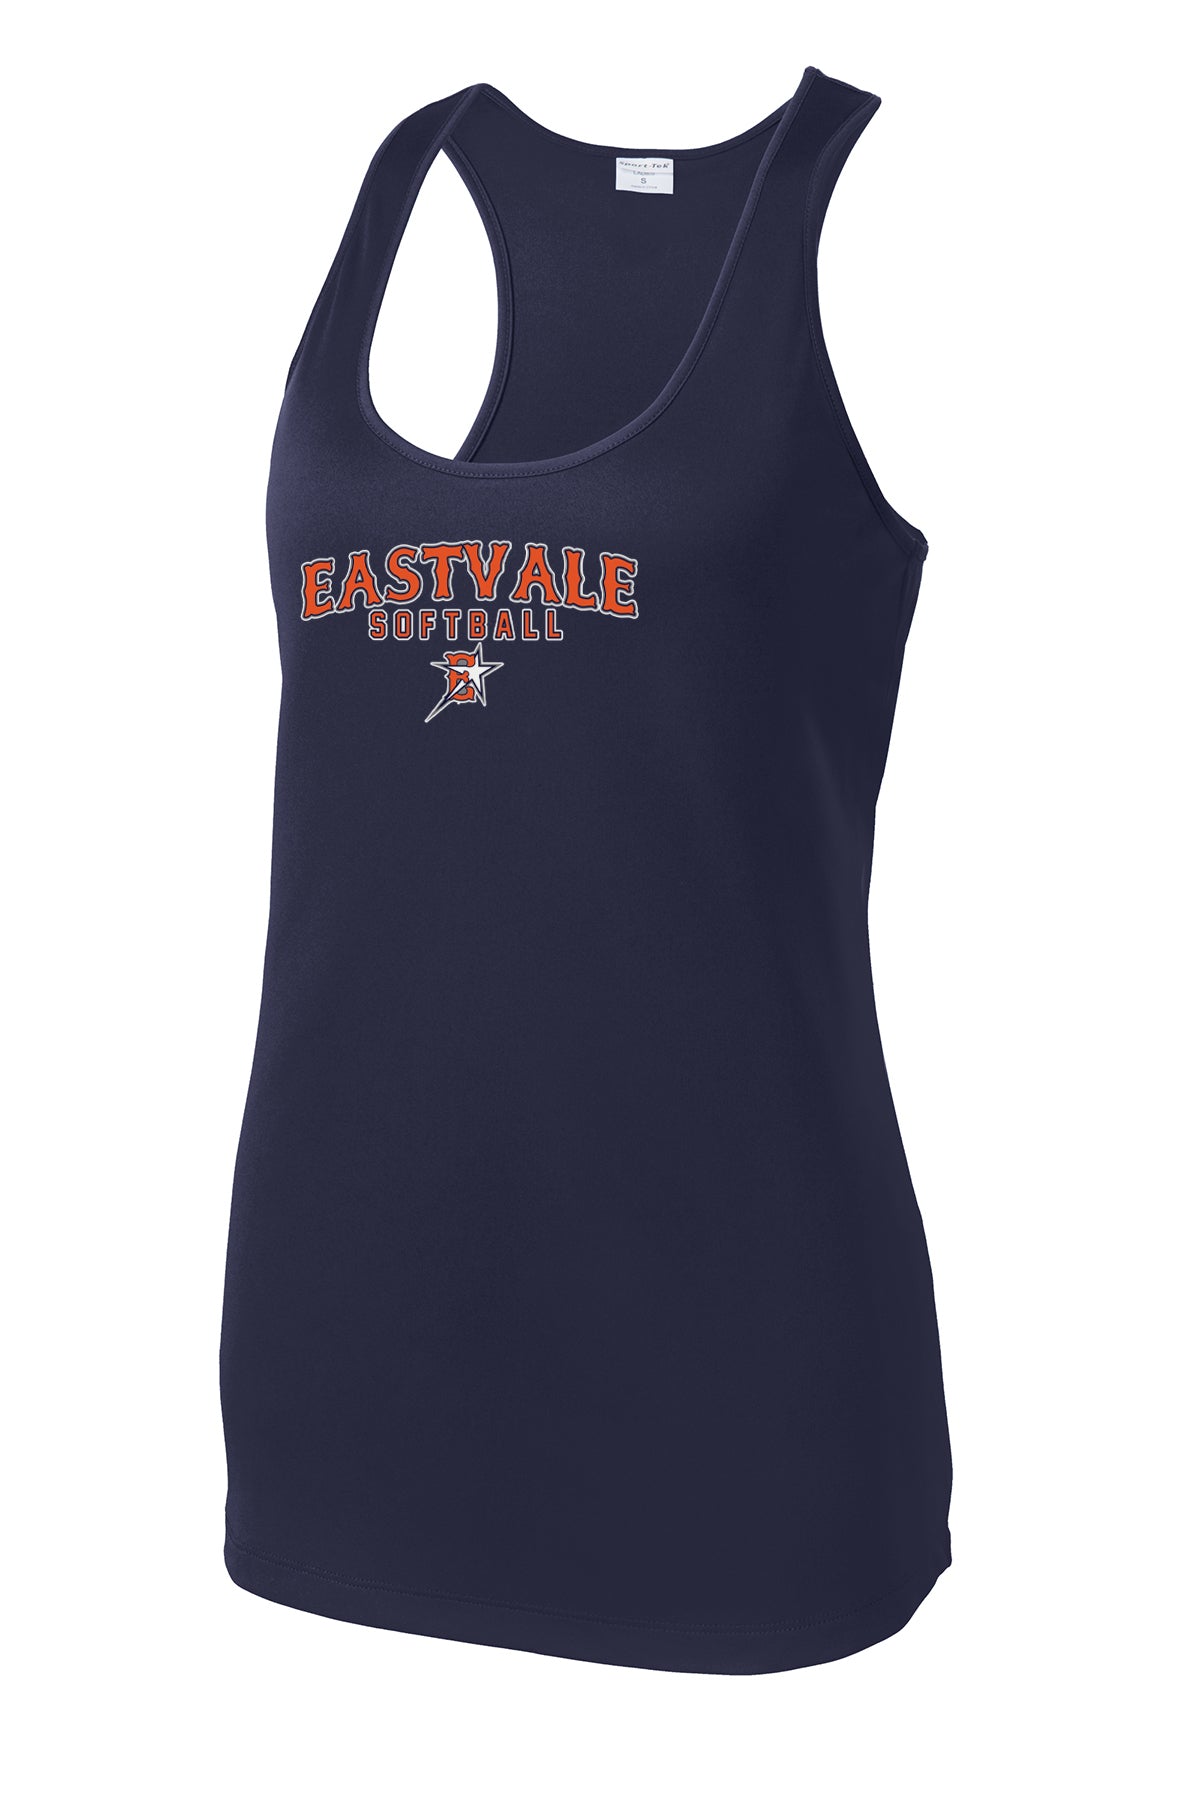 Eastvale Girl's Softball Women's Racerback Tank